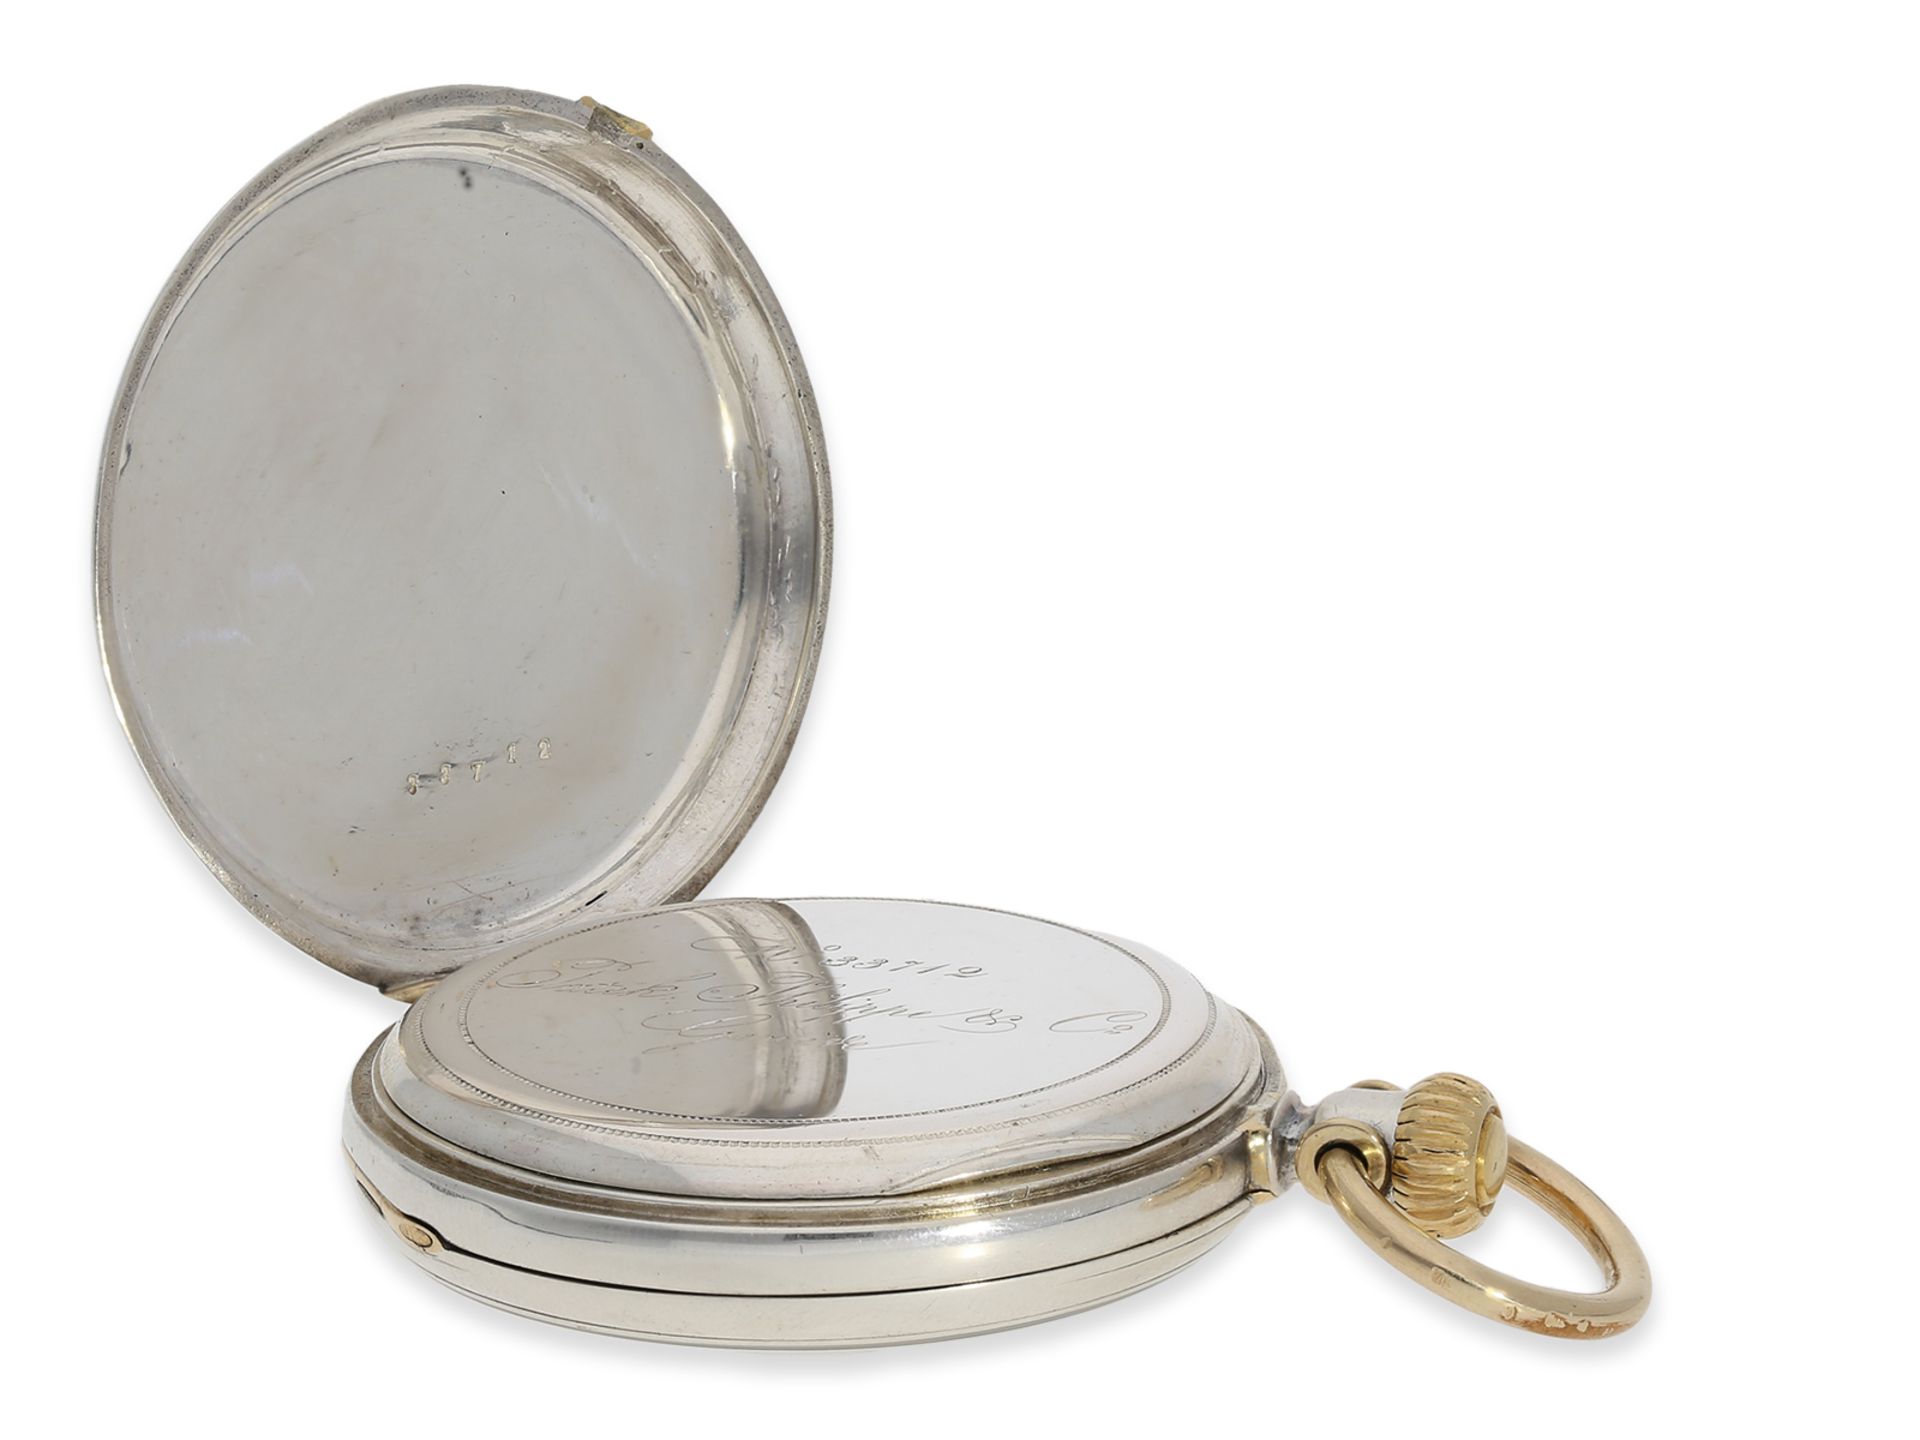 Taschenuhr: frühe, einzigartige Patek Philippe Taschenuhr, Ankerchronometer mit frühem Kronenaufzug  - Bild 4 aus 5